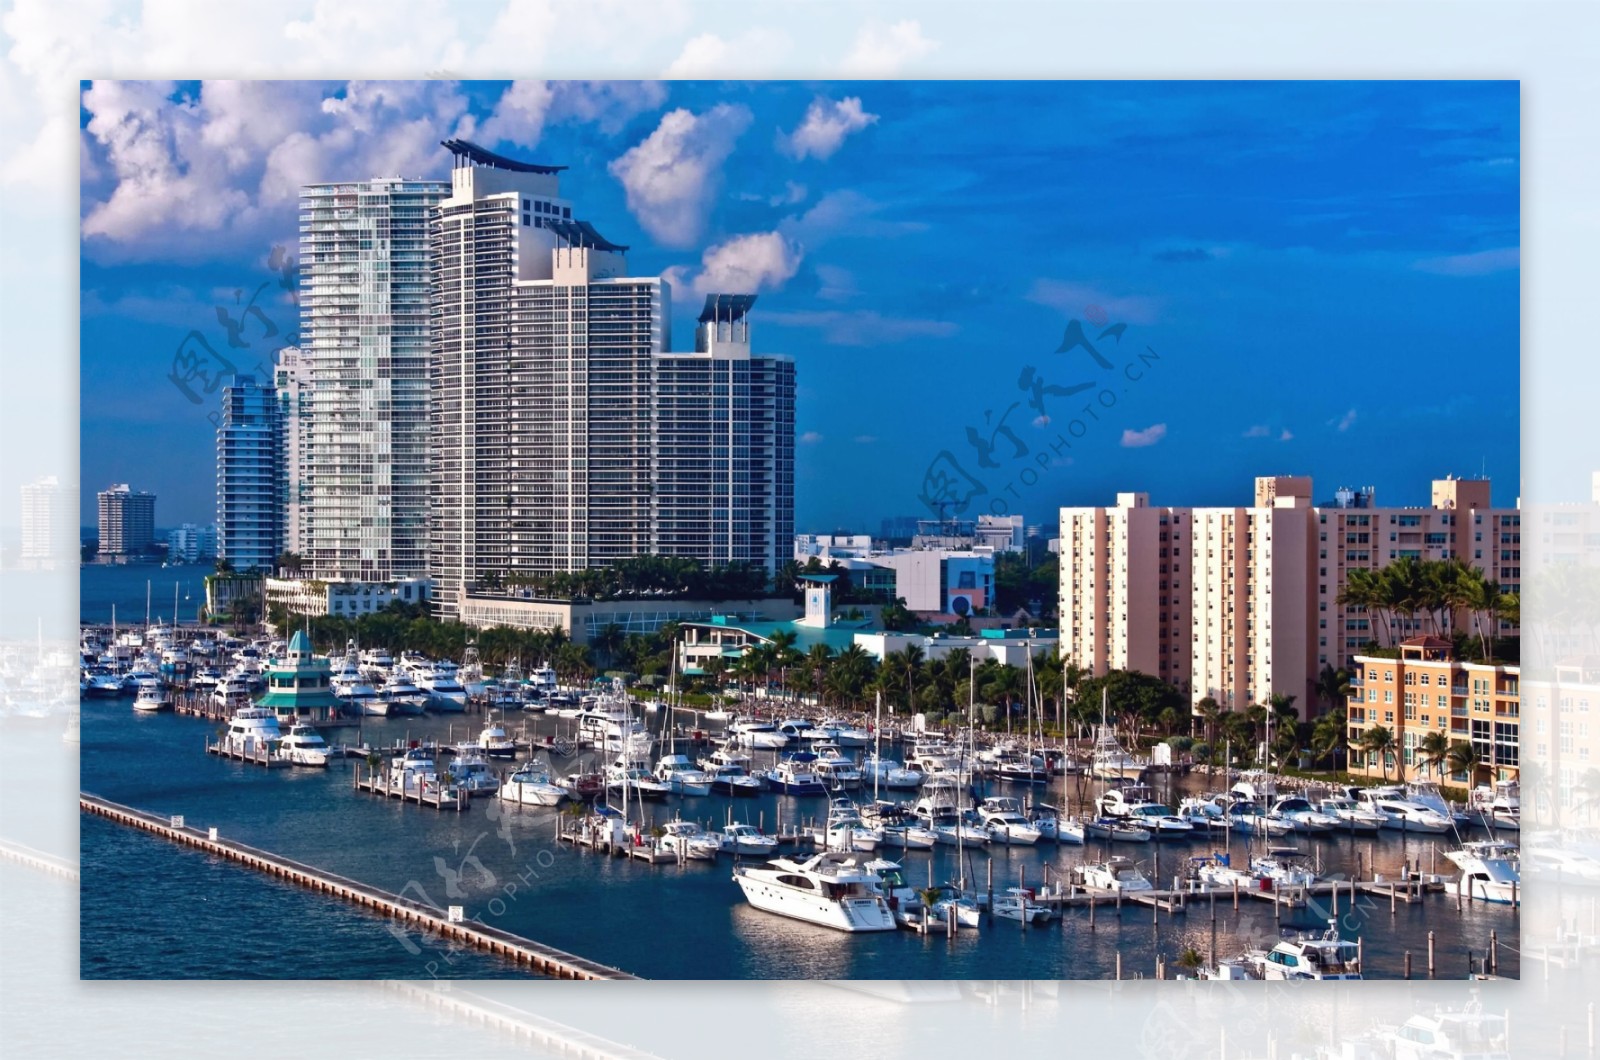 迈阿密城市一景图片